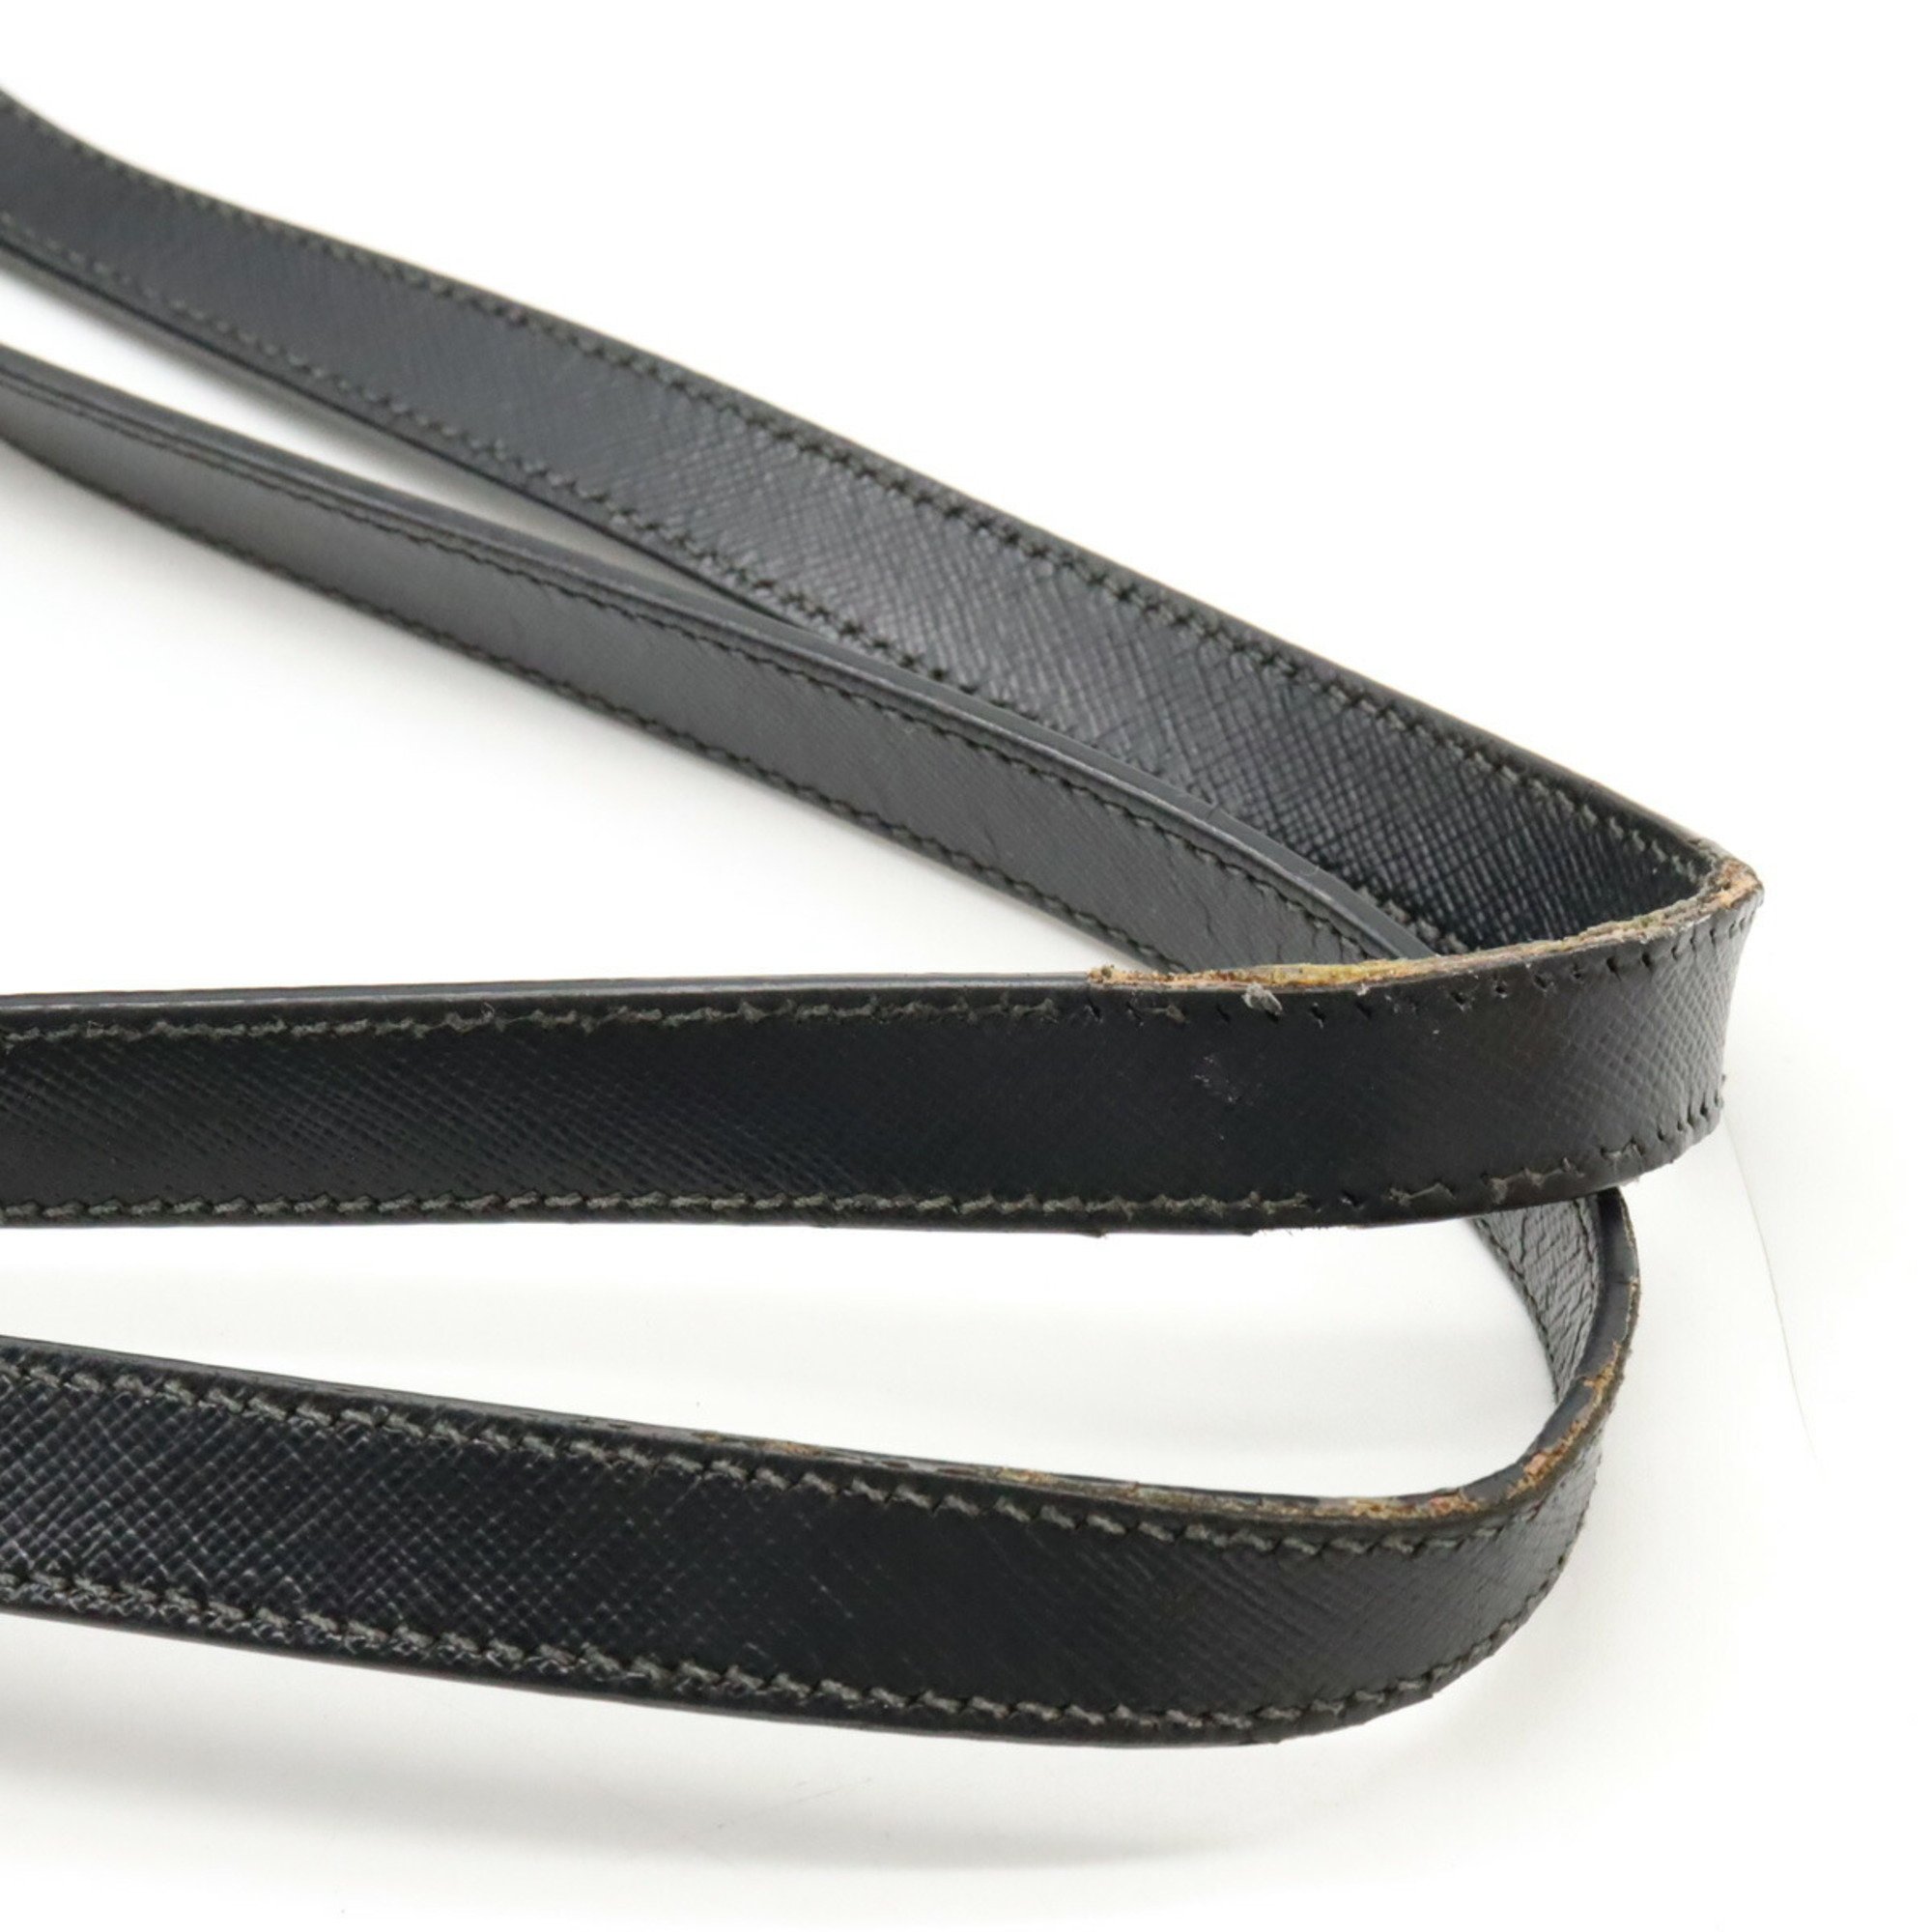 PRADA Prada Tote Bag Shoulder Large Nylon Leather NERO Black BR4997